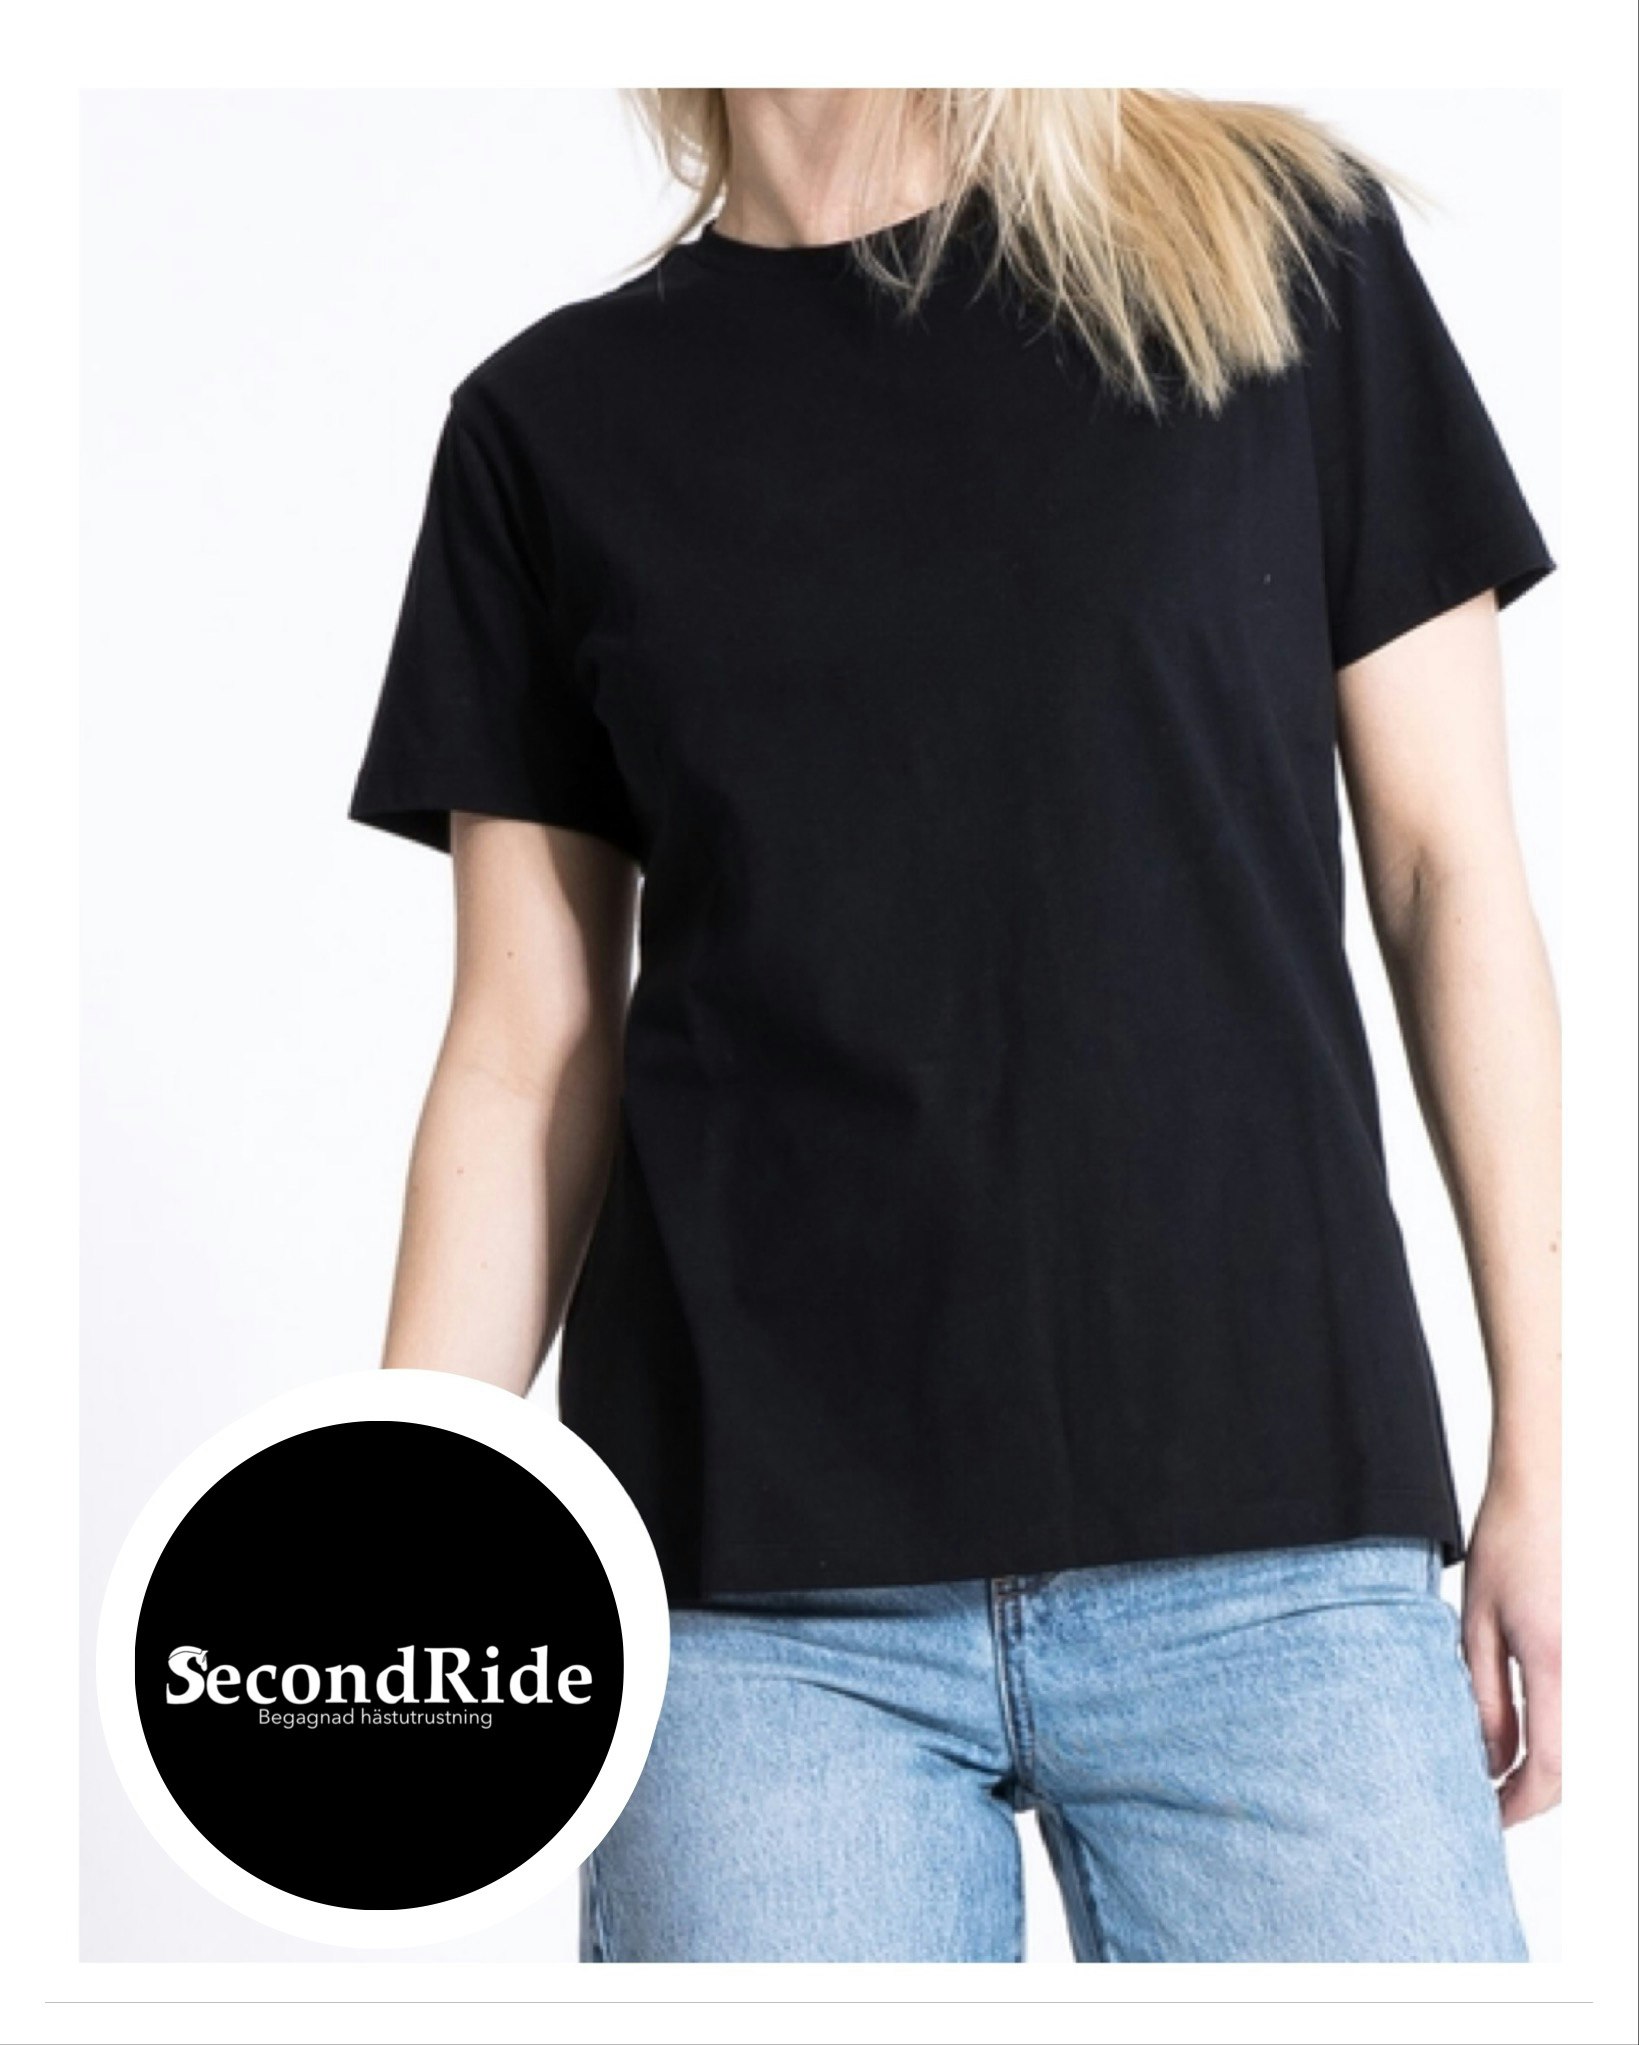 T-shirt "Secondride"